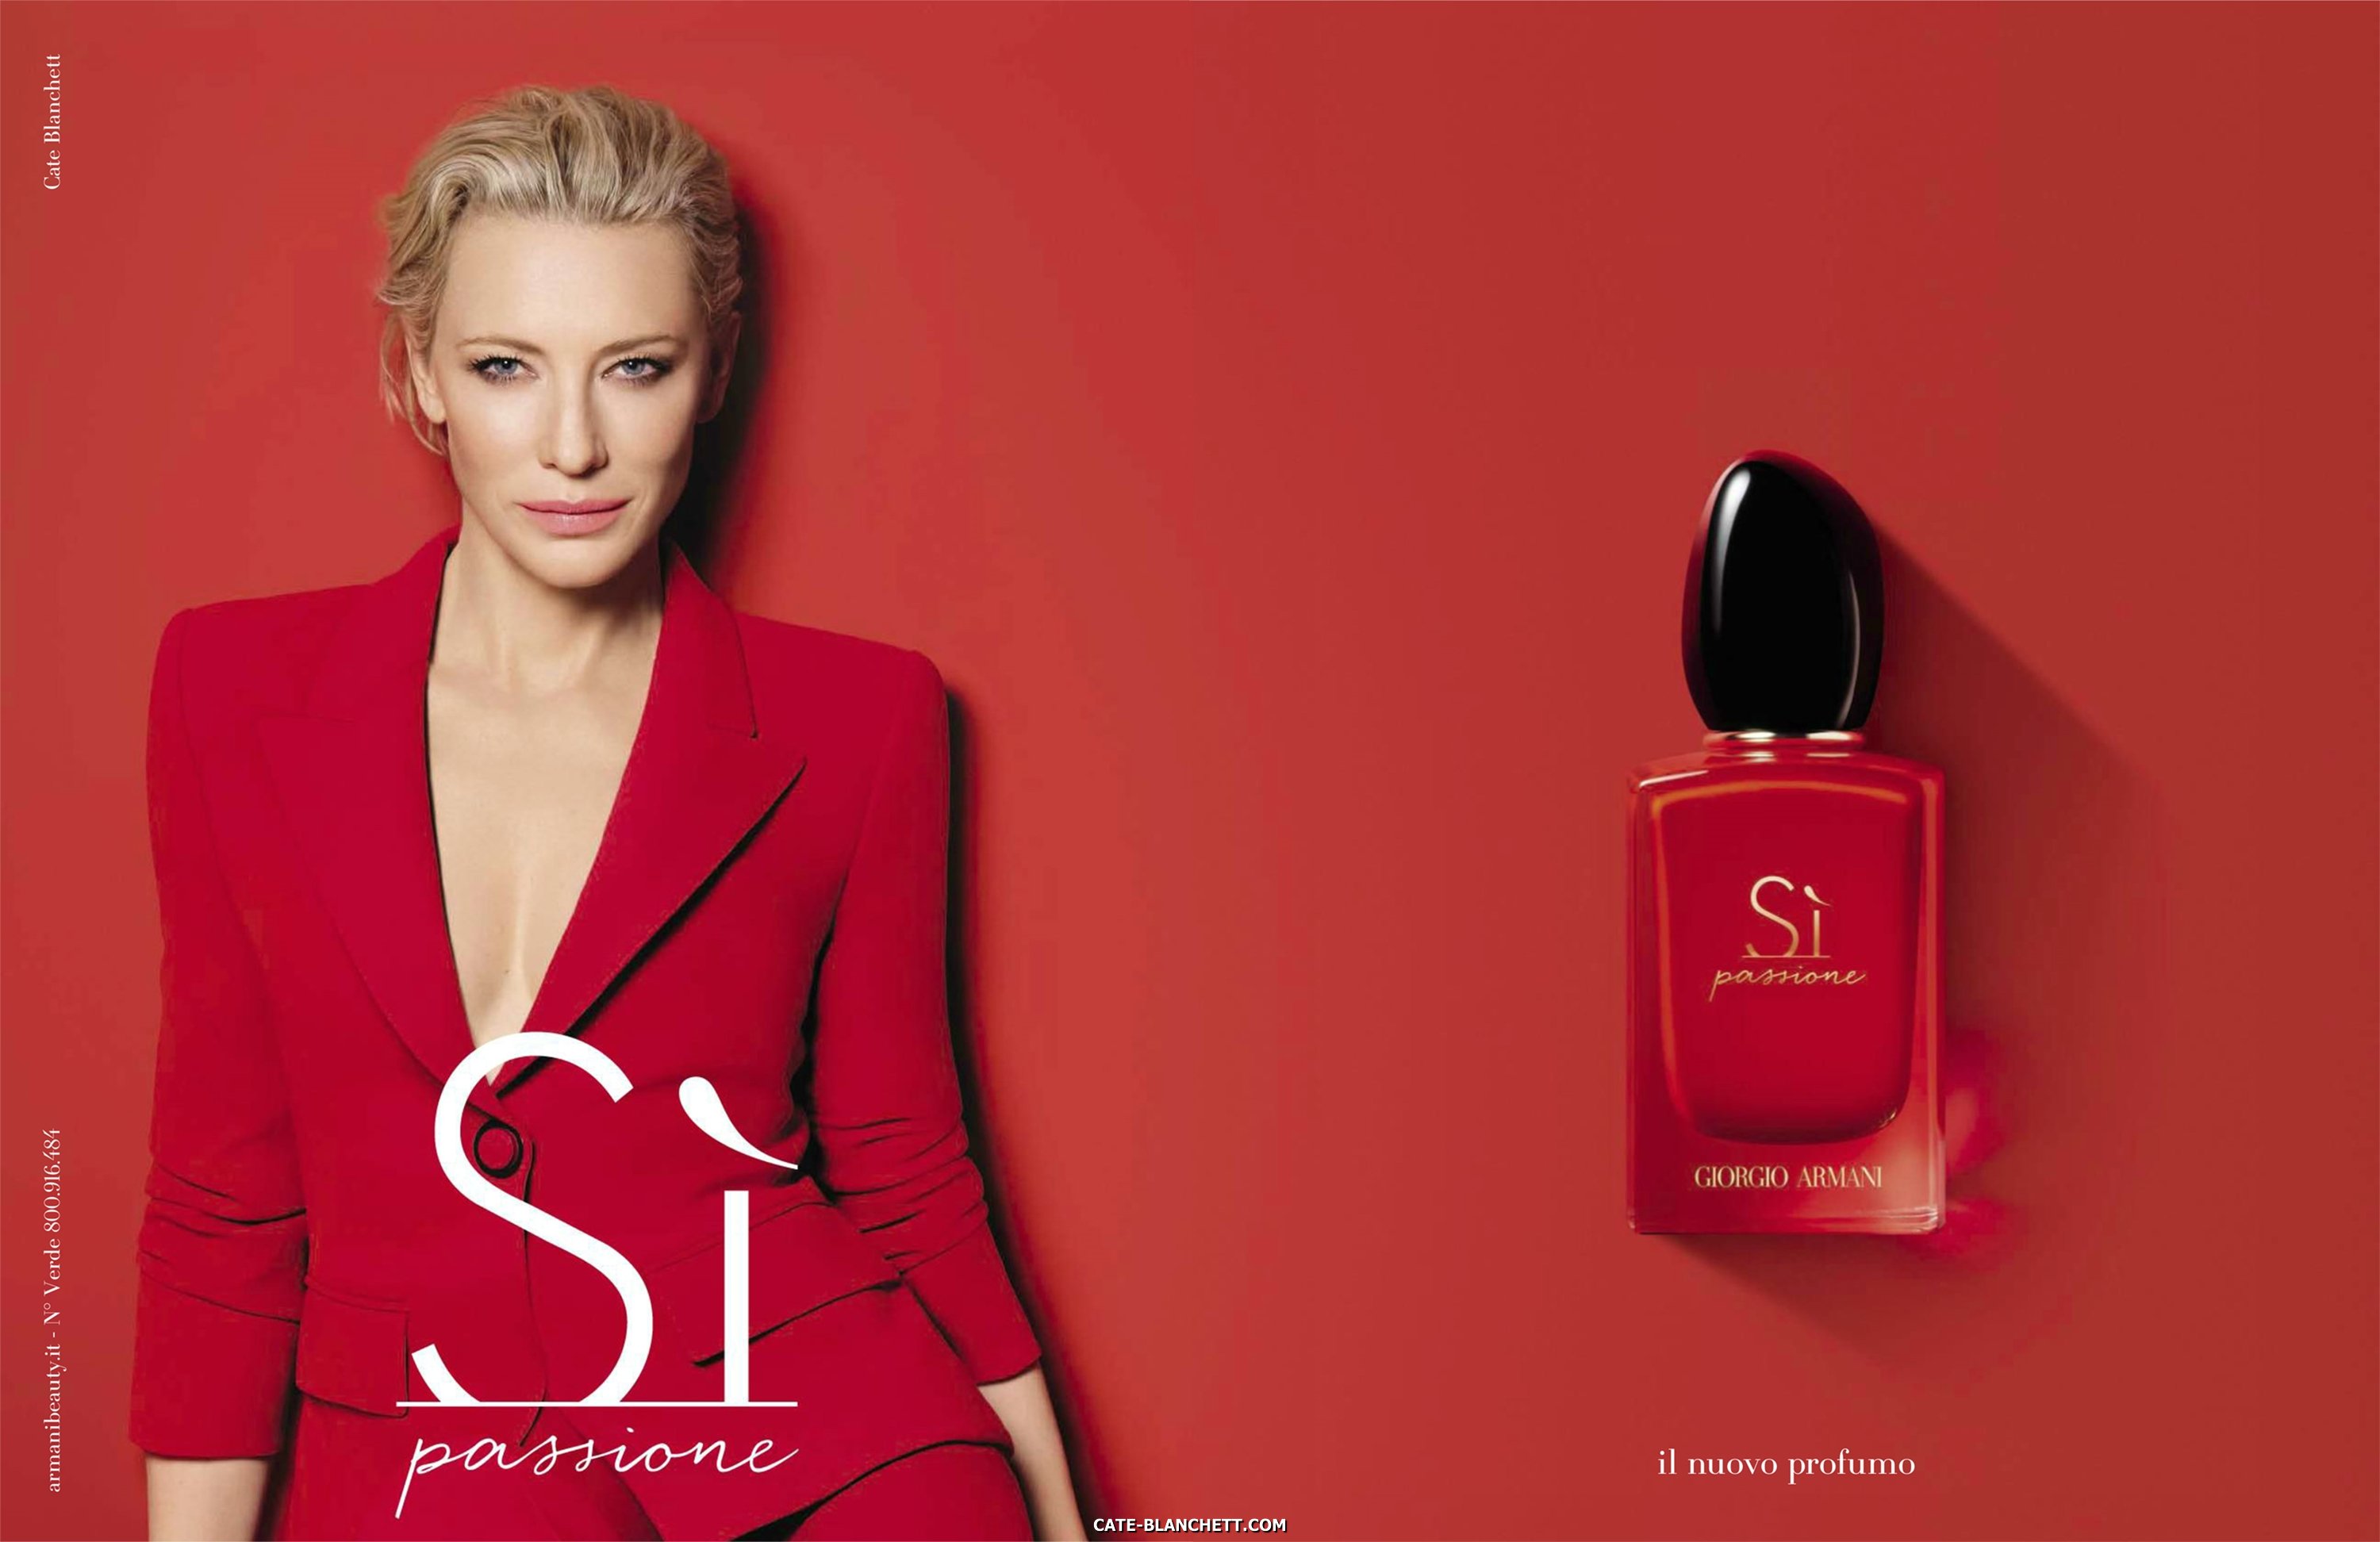 Sì Passione - Campaign Ads (2018) - 003 - Cate Blanchett Fan | Cate ...